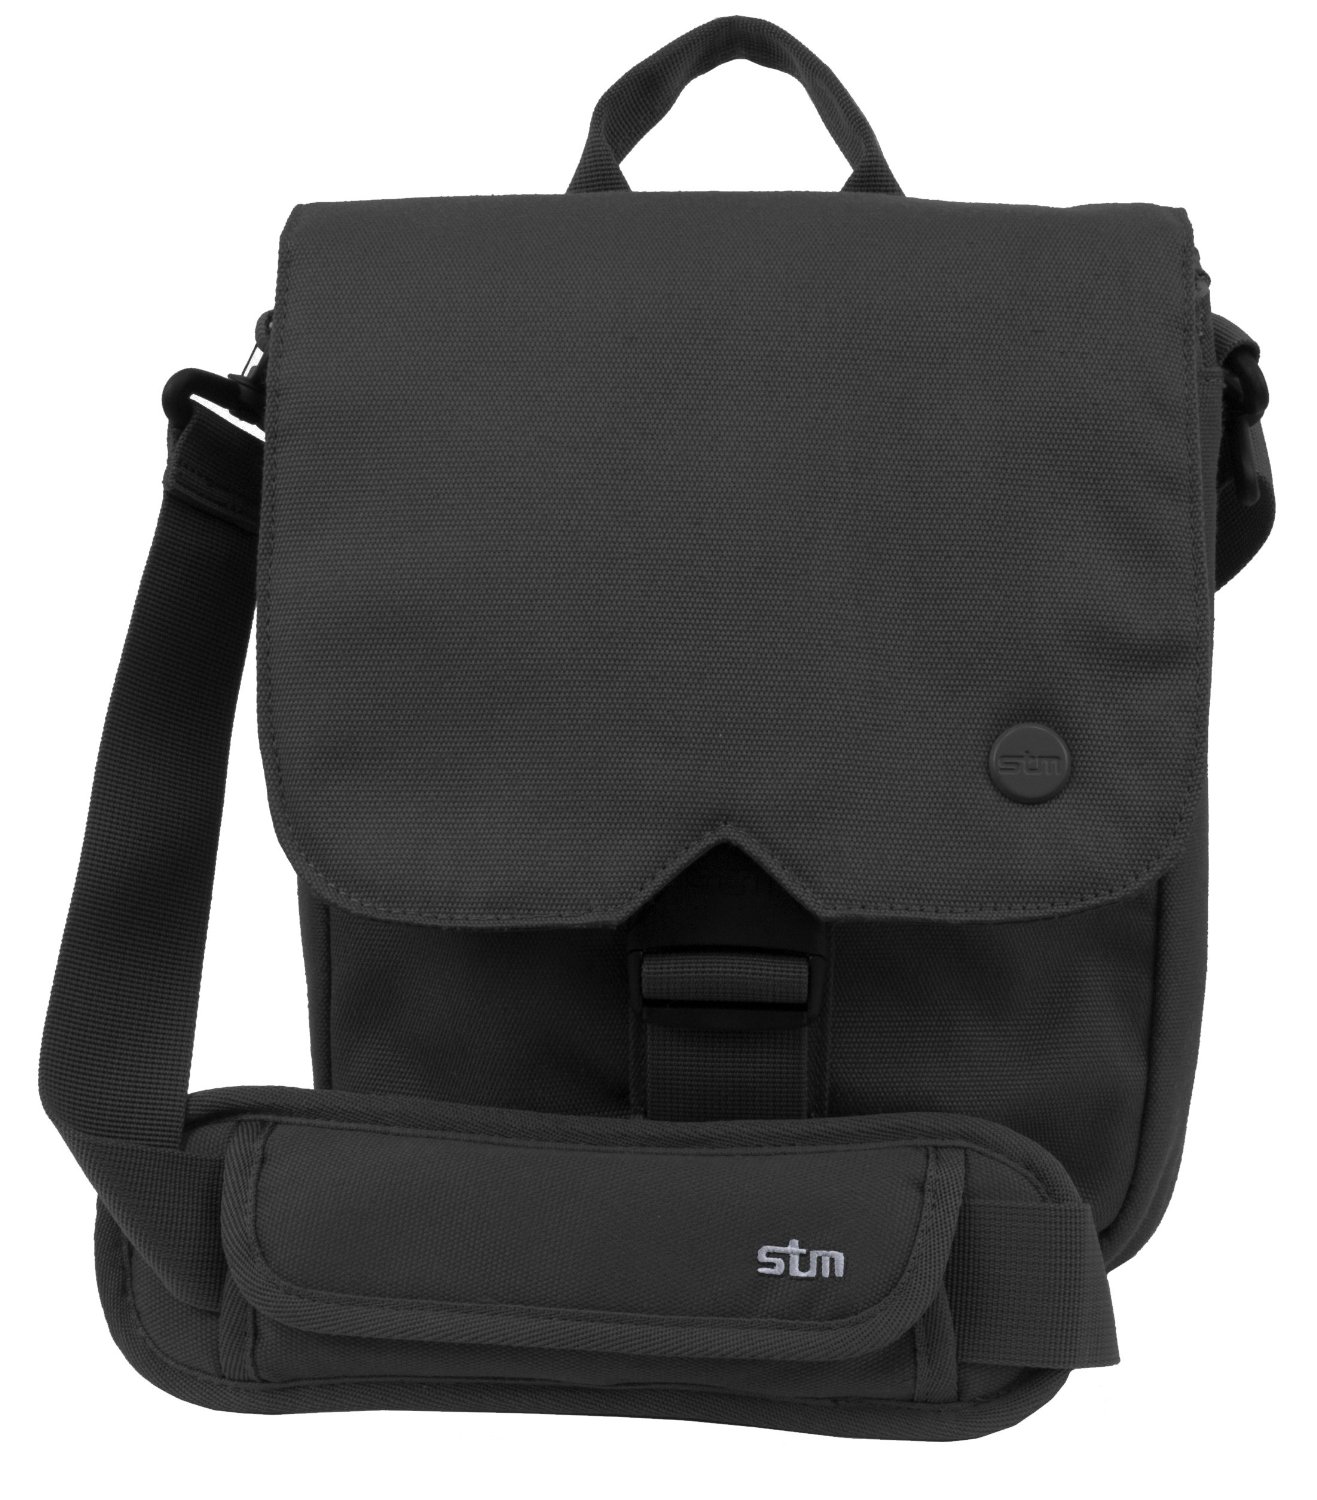 iPad Shoulder Bag by STM $13 Prime shipped (orig. $55)